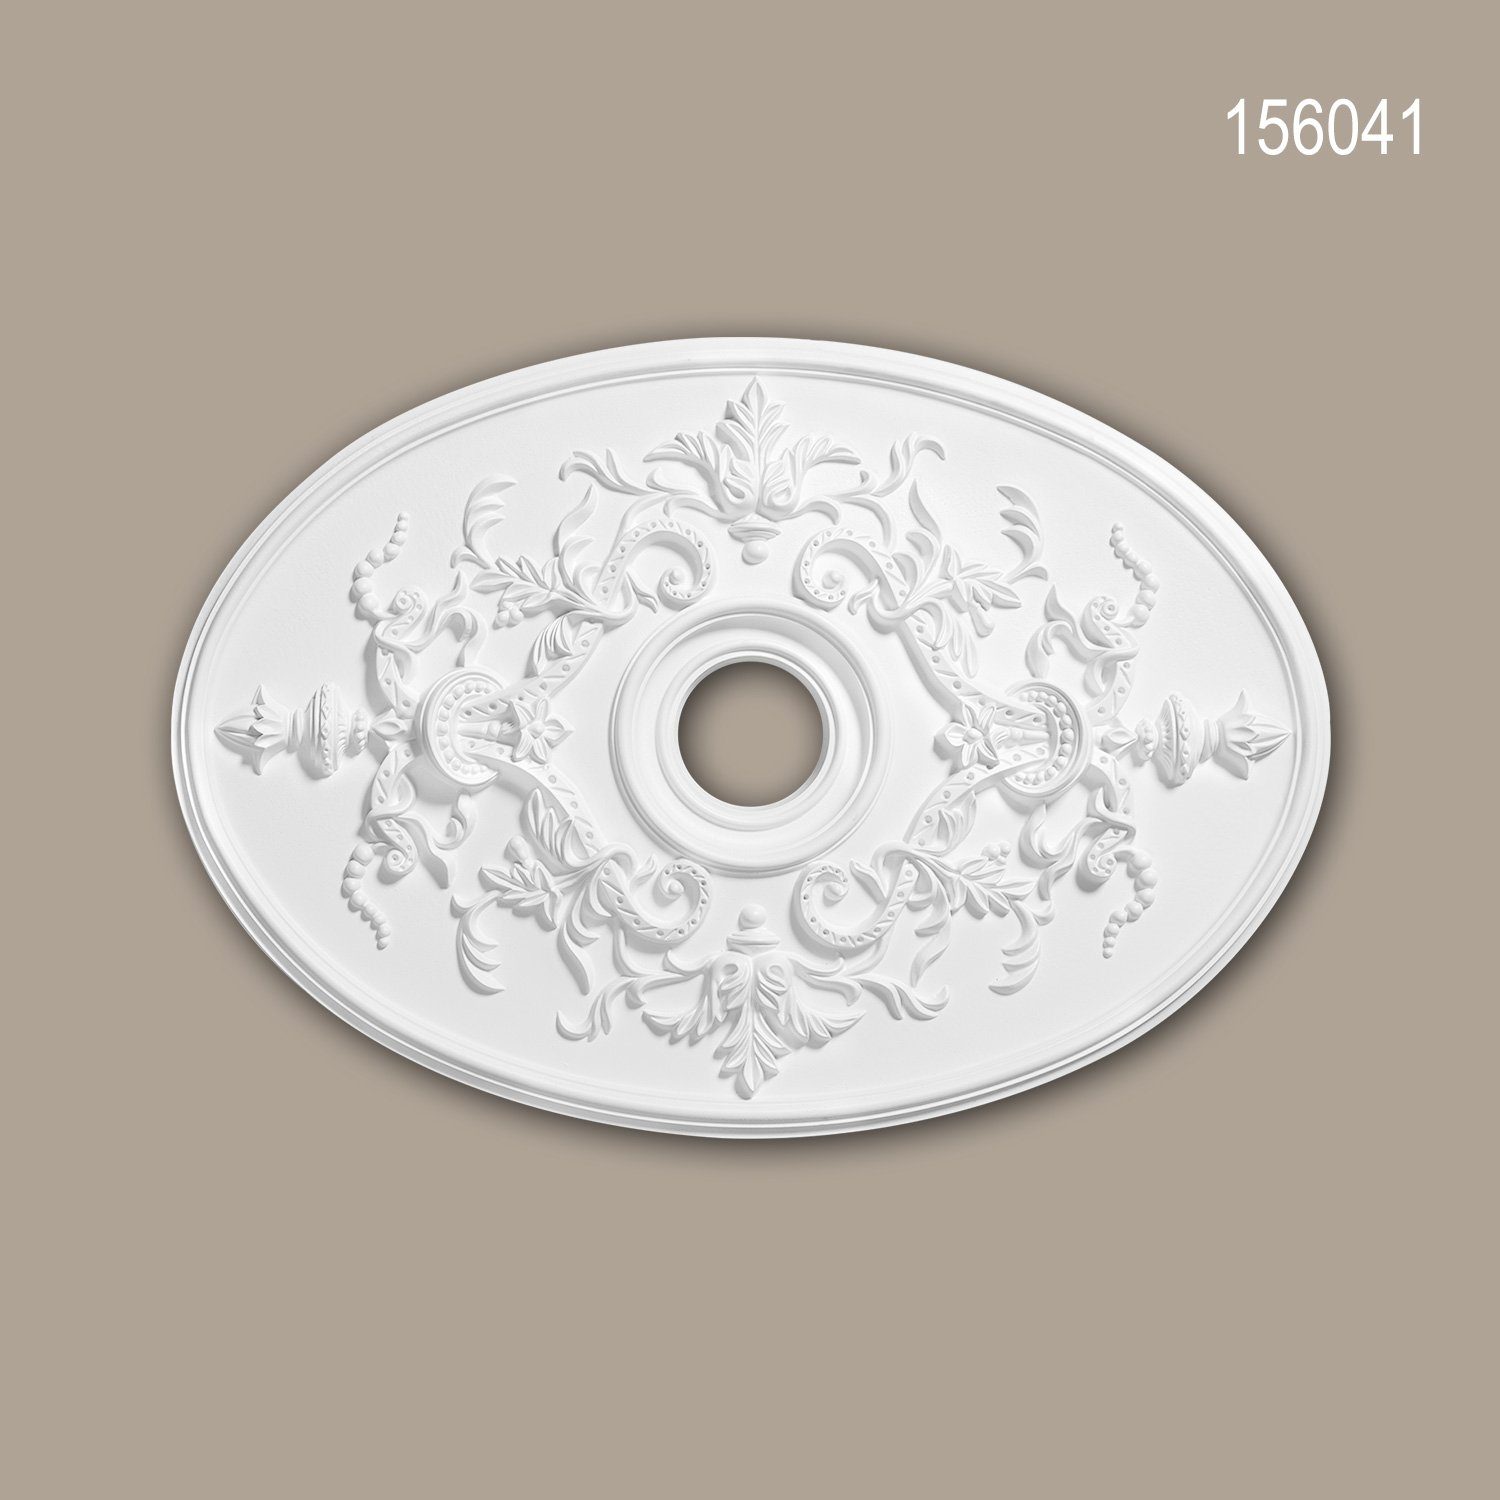 Profhome Decken-Rosette 156041 (Rosette, 1 St., Deckenrosette, Medallion, Stuckrosette, Deckenelement, Zierelement, 78,5 x 54,4 cm), weiß, vorgrundiert, Stil: Neo-Empire